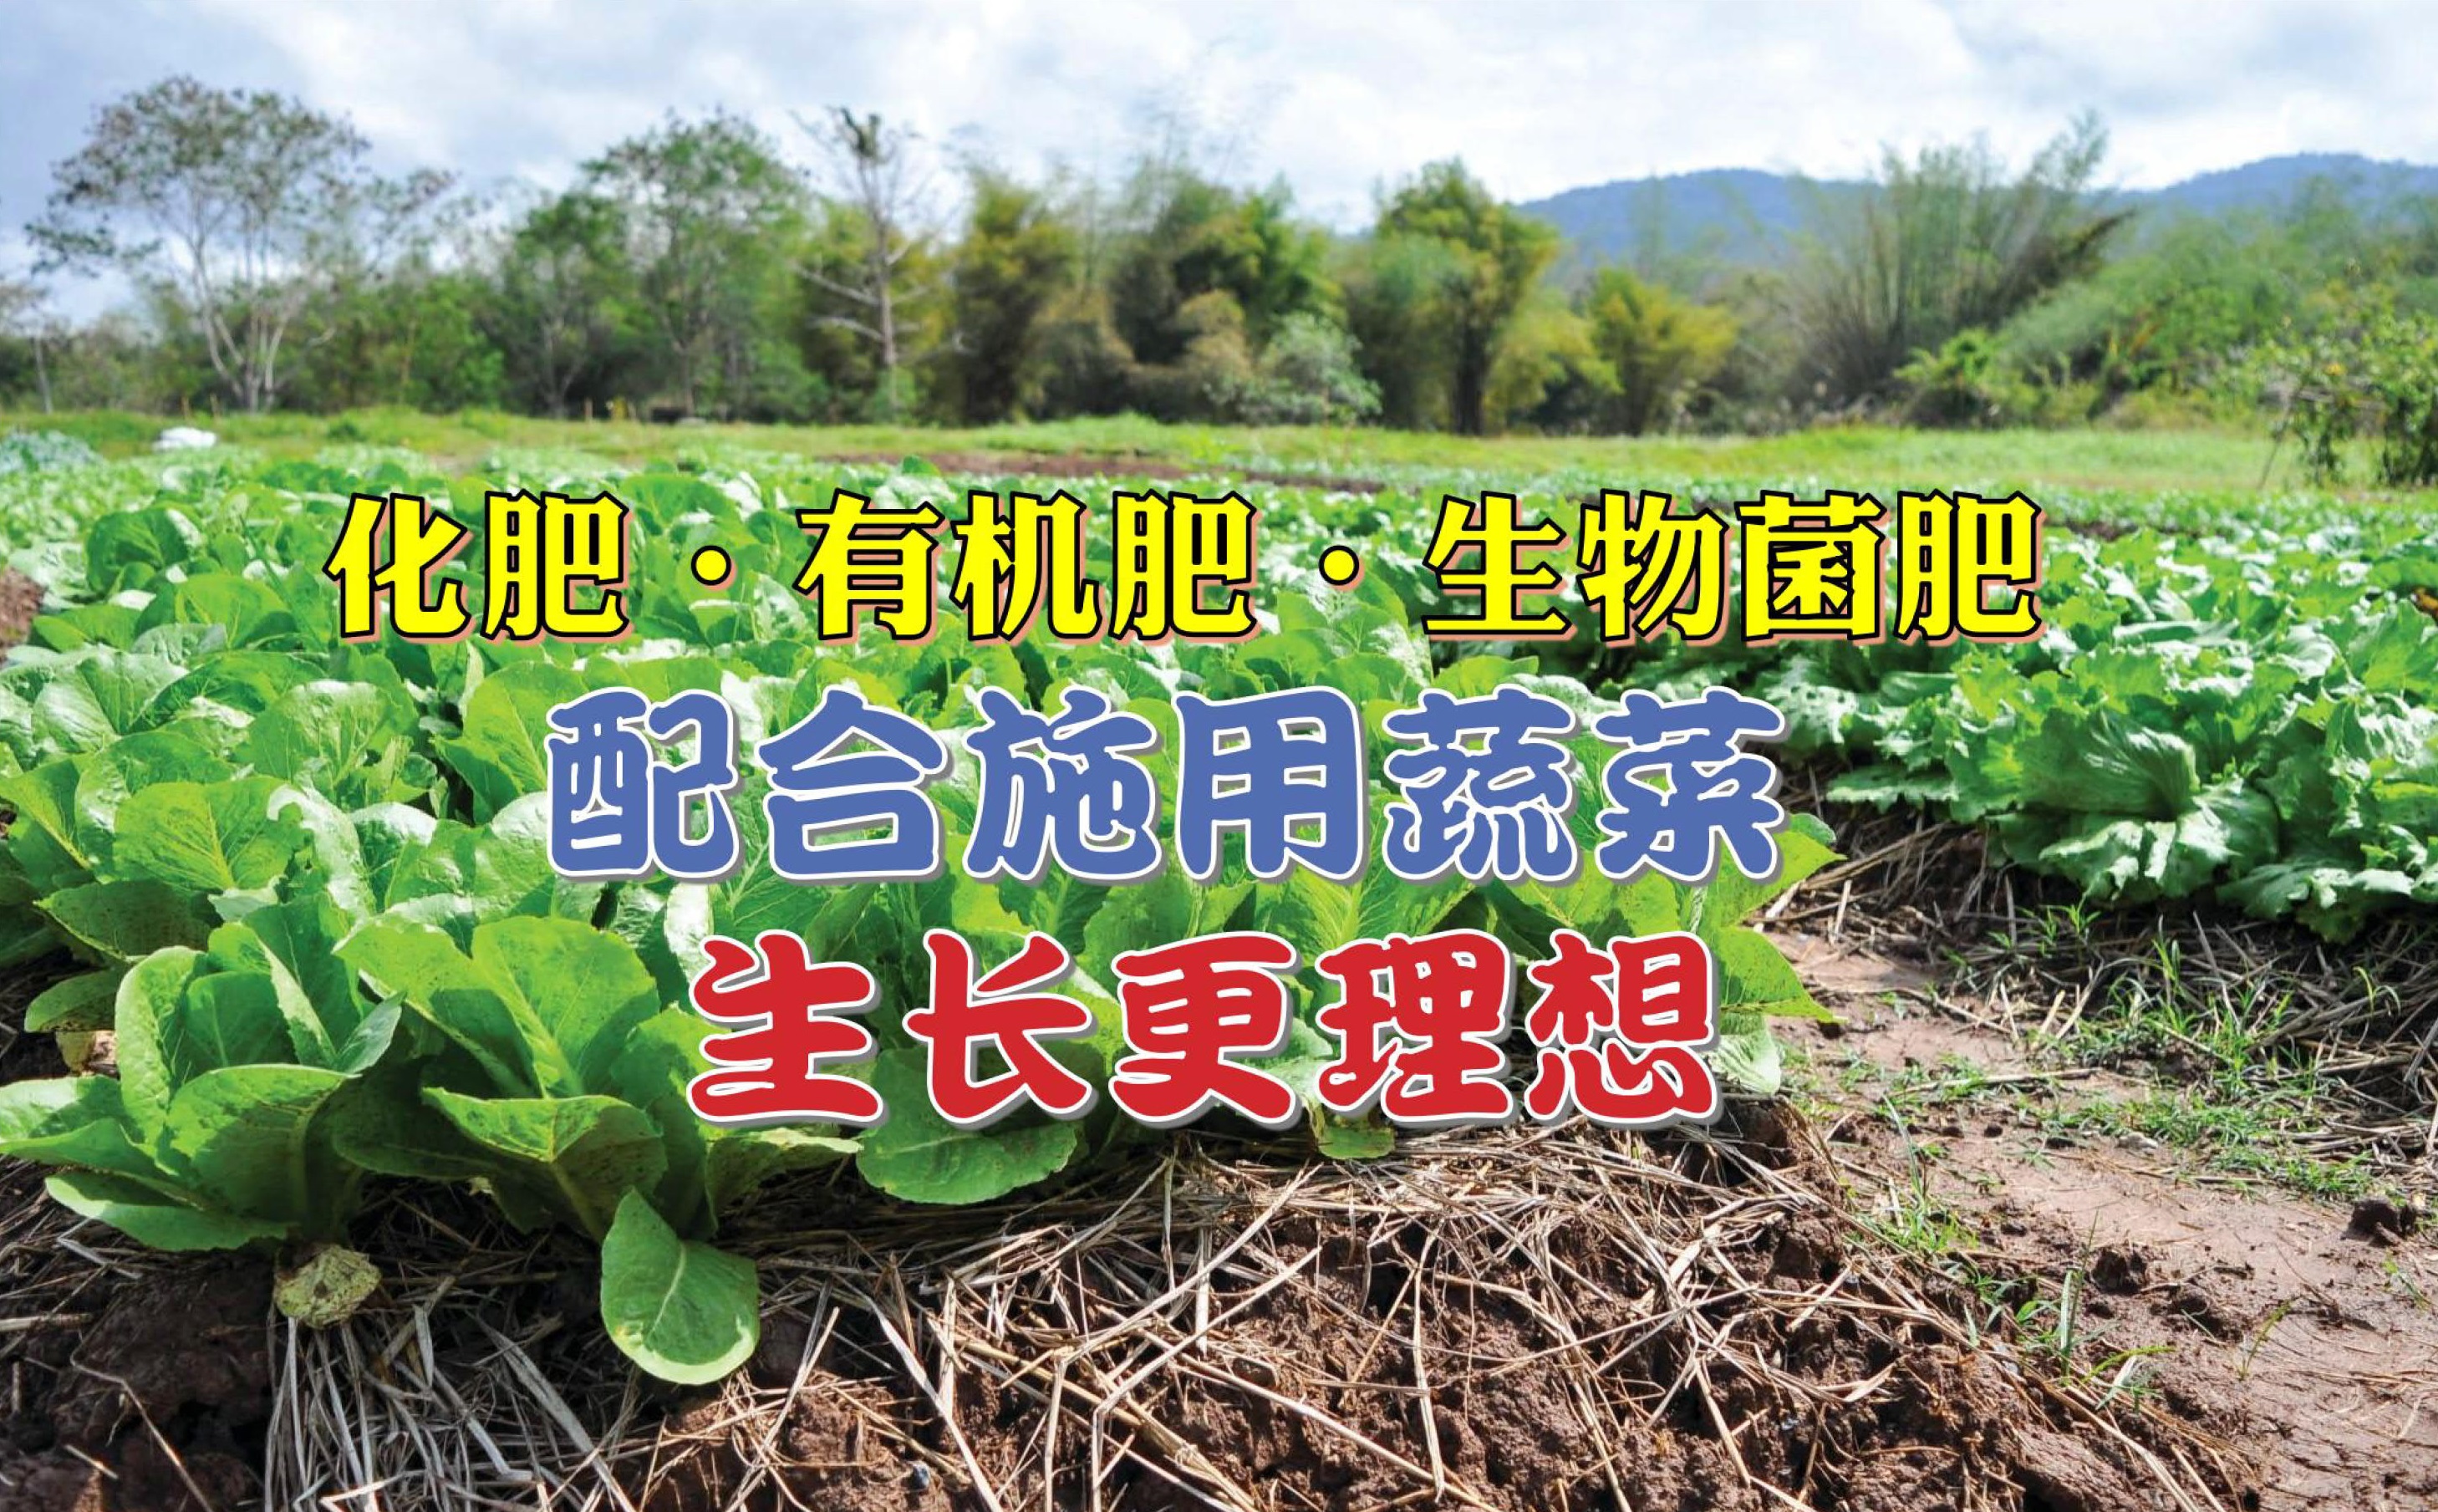 化肥 • 有机肥 • 生物菌肥 配合施用蔬菜生长更理想 - 农牧世界